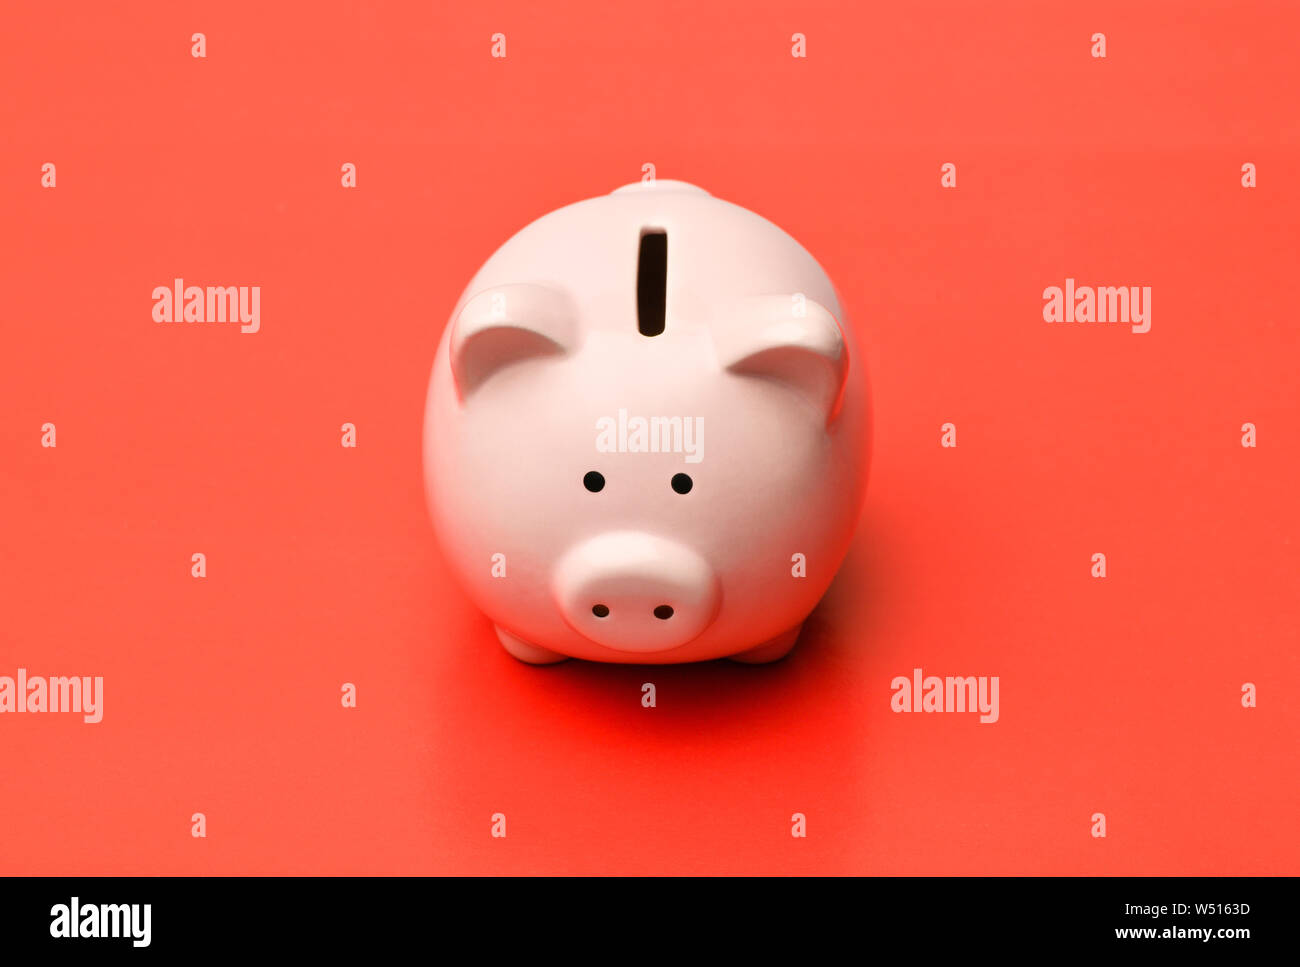 Pink Piggy Bank se trouve au centre sur un fond rouge avec une ombre. Photographie horizontale Banque D'Images